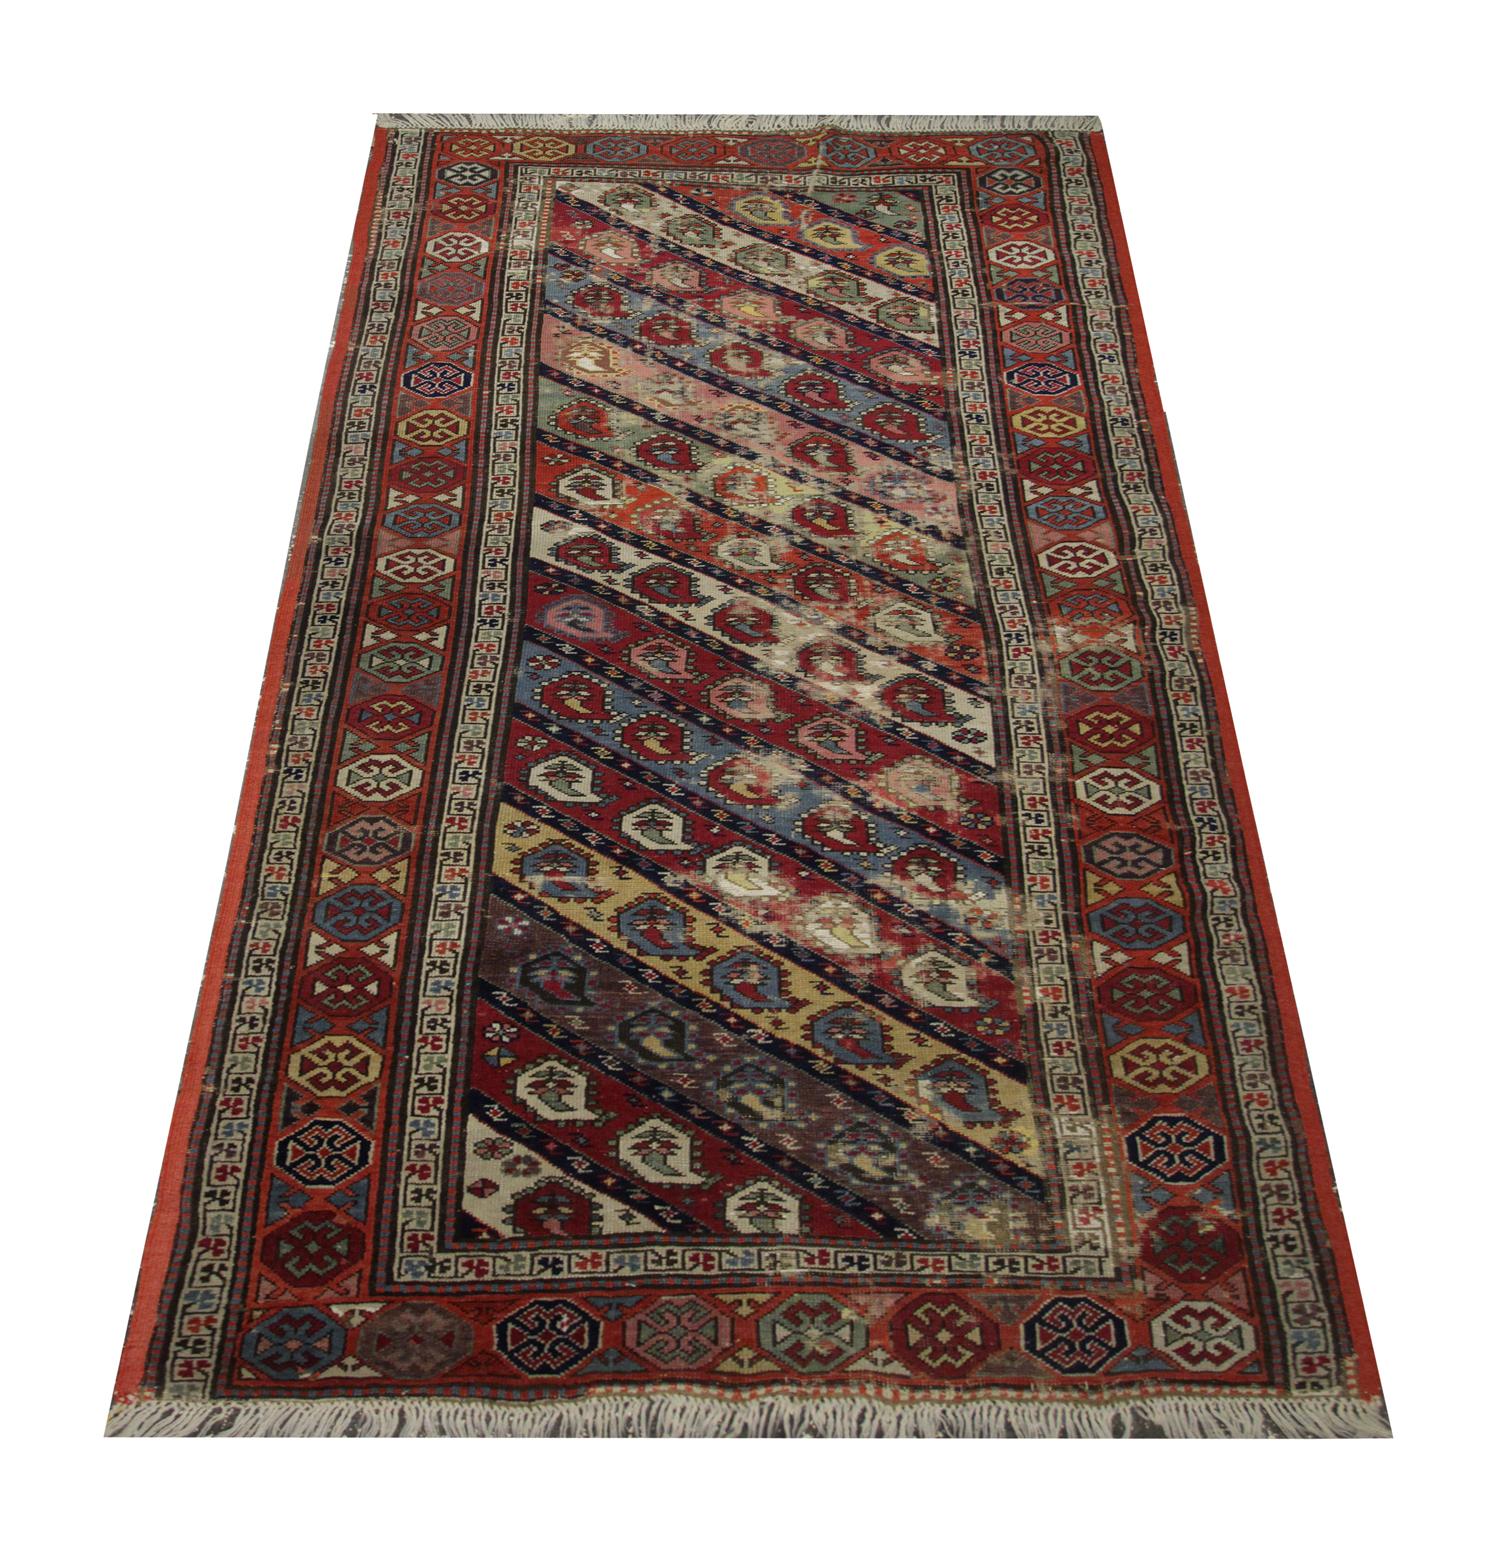 Ce tapis en laine élégamment tissé à la main est un excellent exemple de tapis caucasien des années 1880. Des motifs Paisley ornent le dessin central de ce tapis, délicatement tissé en diagonale avec des couleurs vives comme le rouge, le bleu, le